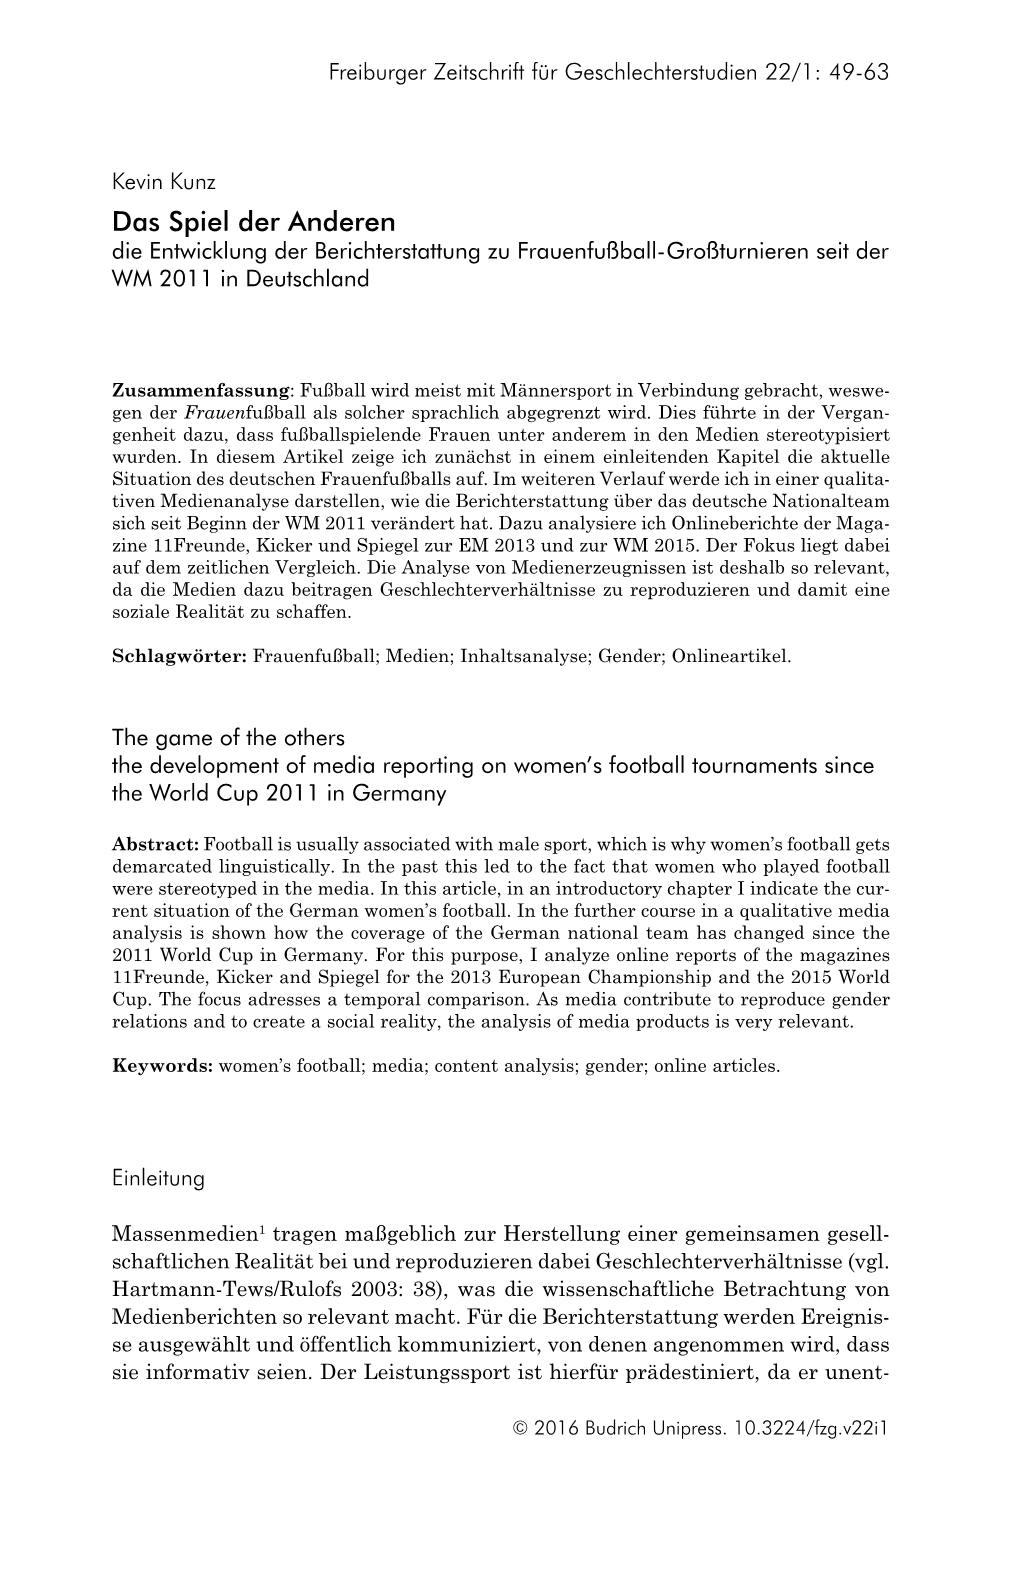 Das Spiel Der Anderen Die Entwicklung Der Berichterstattung Zu Frauenfußball-Großturnieren Seit Der WM 2011 in Deutschland